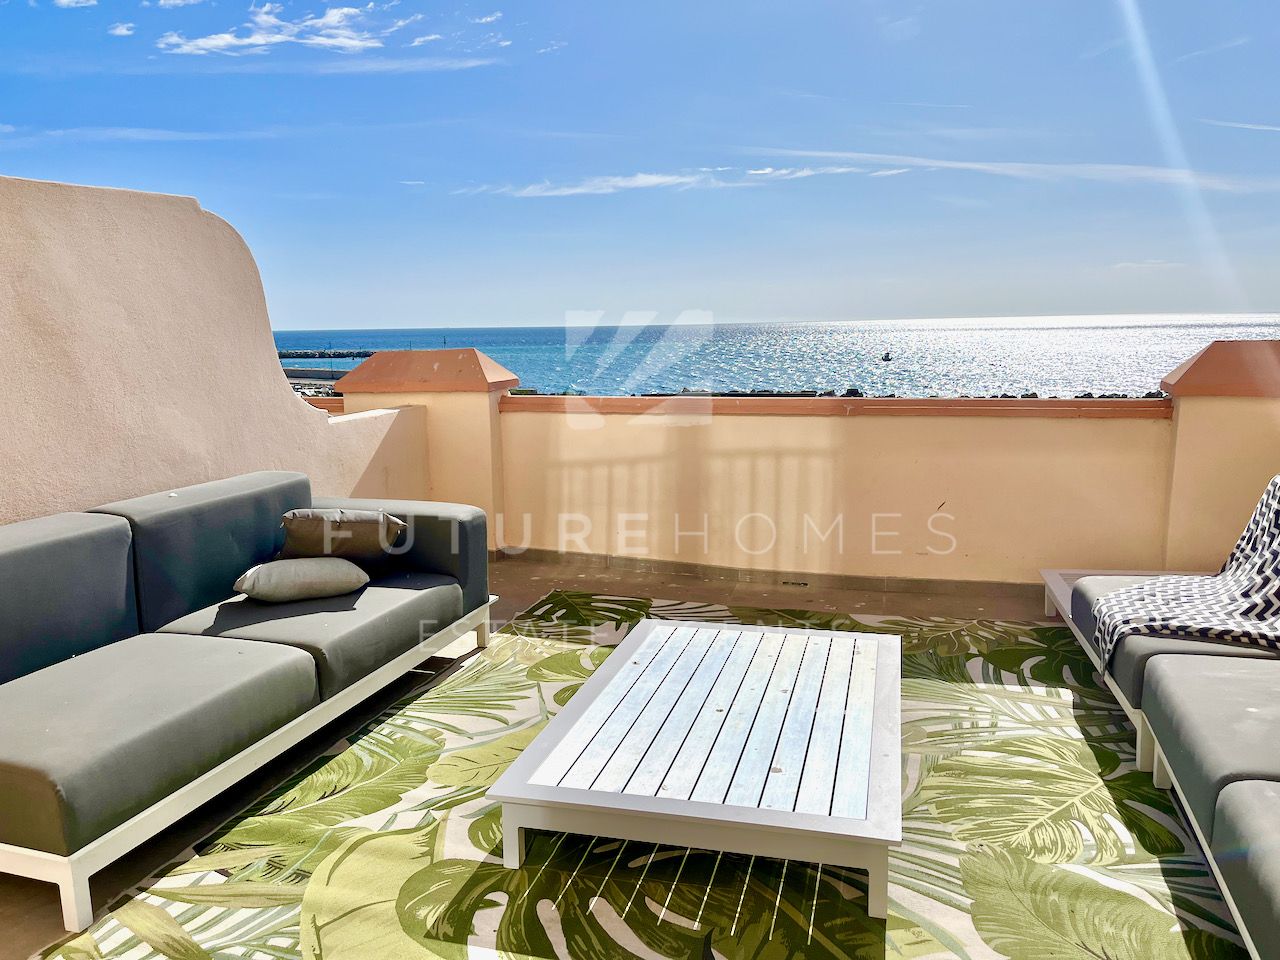 Impresionante casa adosada en primera línea de playa con acabados de alta calidad y vistas abiertas al mar, en el corazón del puerto deportivo de Estepona